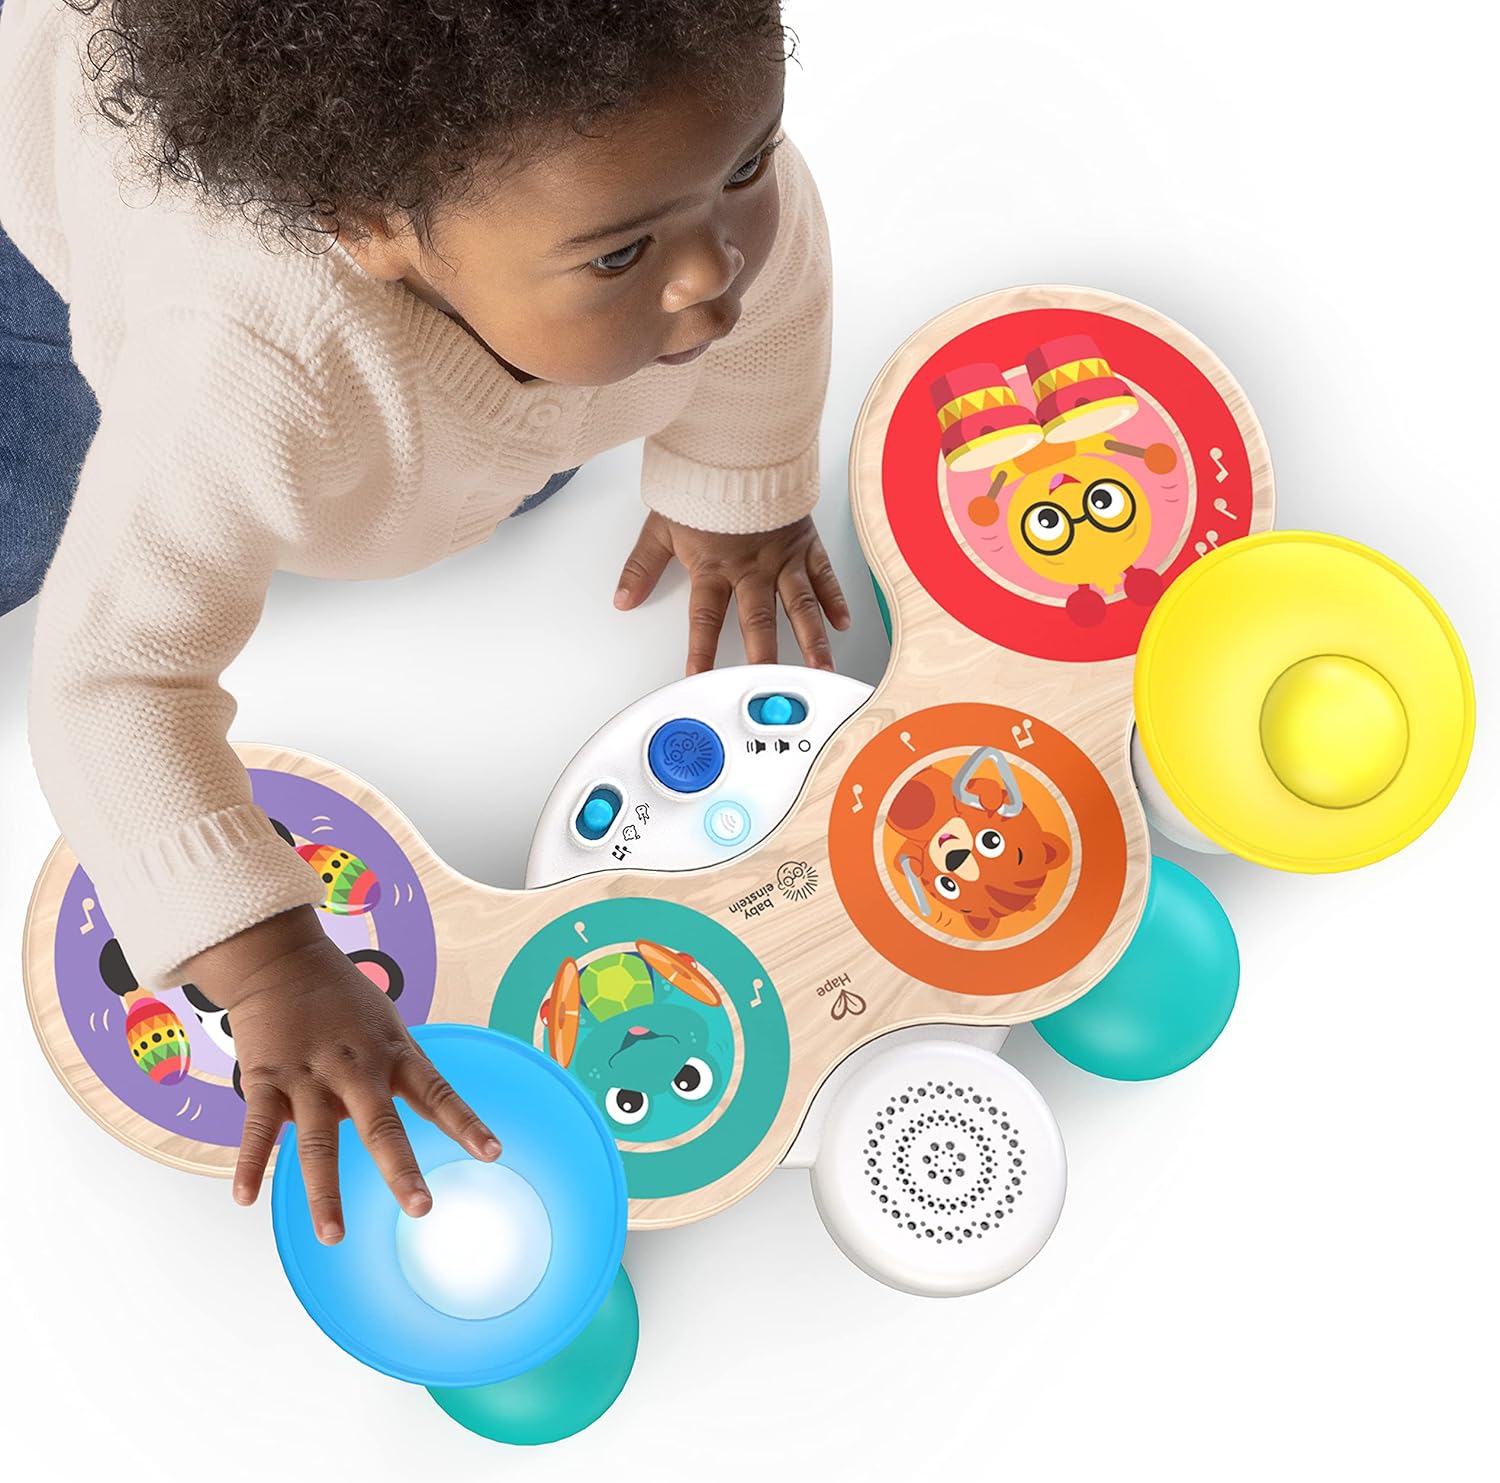 Baby Einstein, Together in Tune Drums Safe Wireless Wooden Musical Toddler Toy